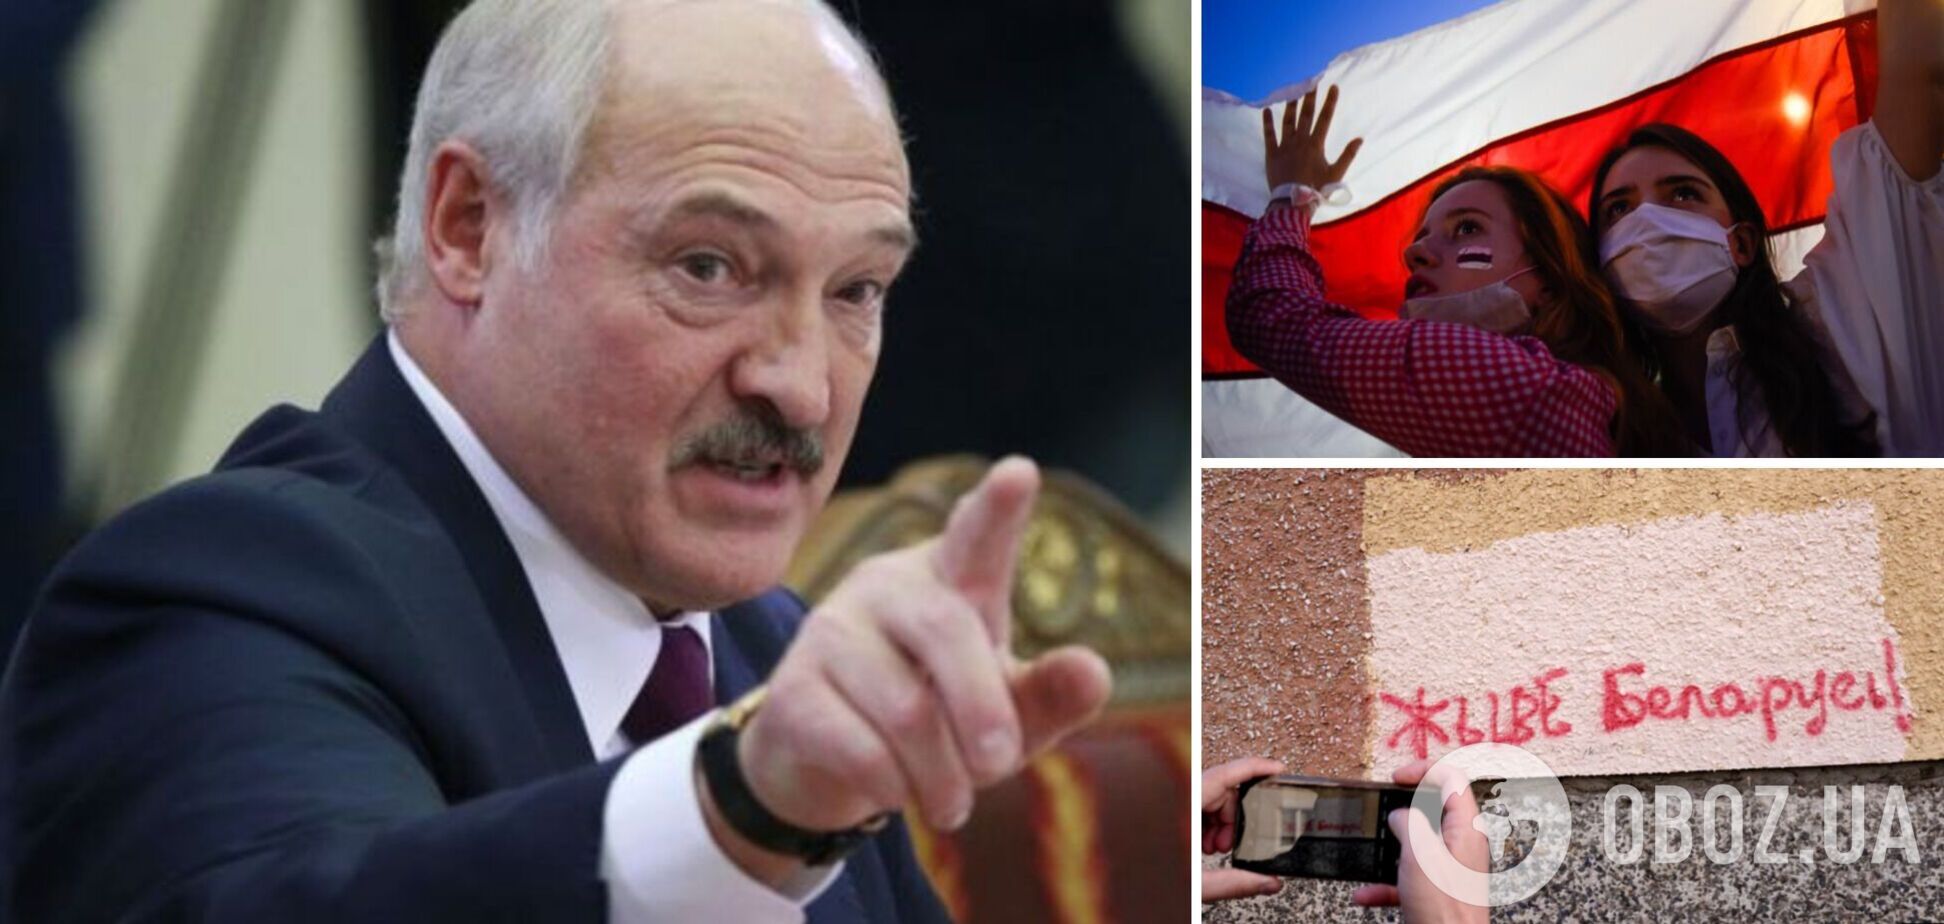 Режим Лукашенка визнав гасло 'Жыве Беларусь!' нацистським, 'приплівши' його до дивізії Waffen-SS